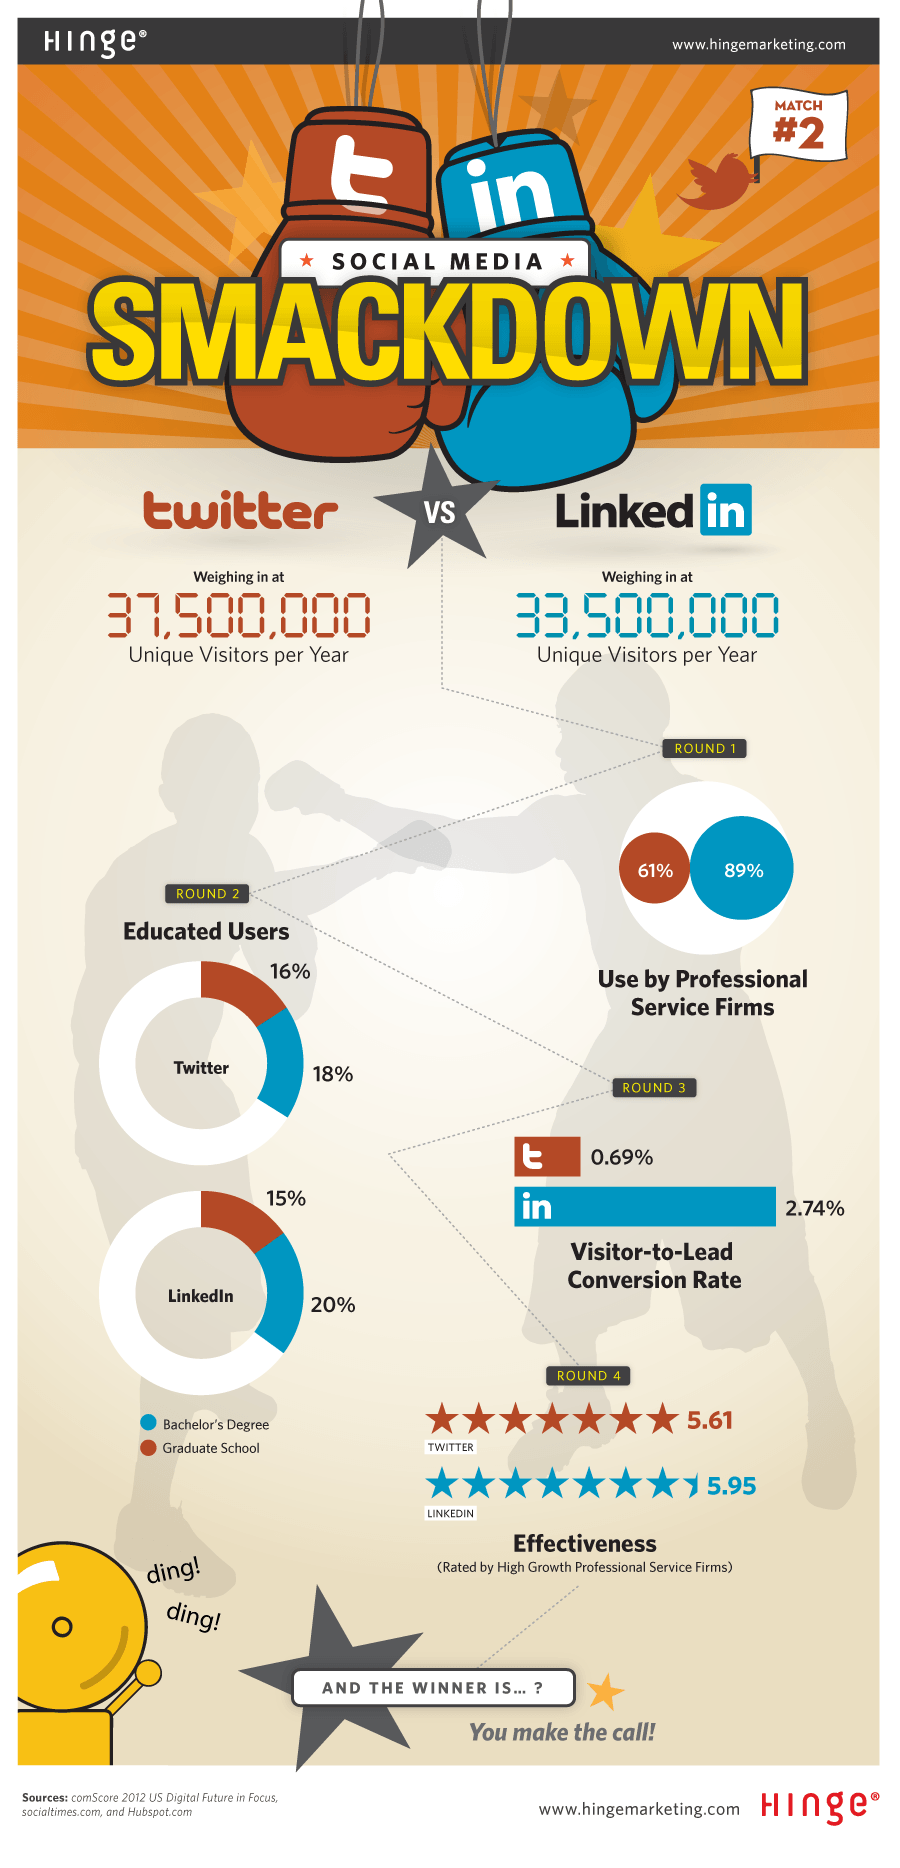 Twitter vs LinkedIn Smackdown Infographic